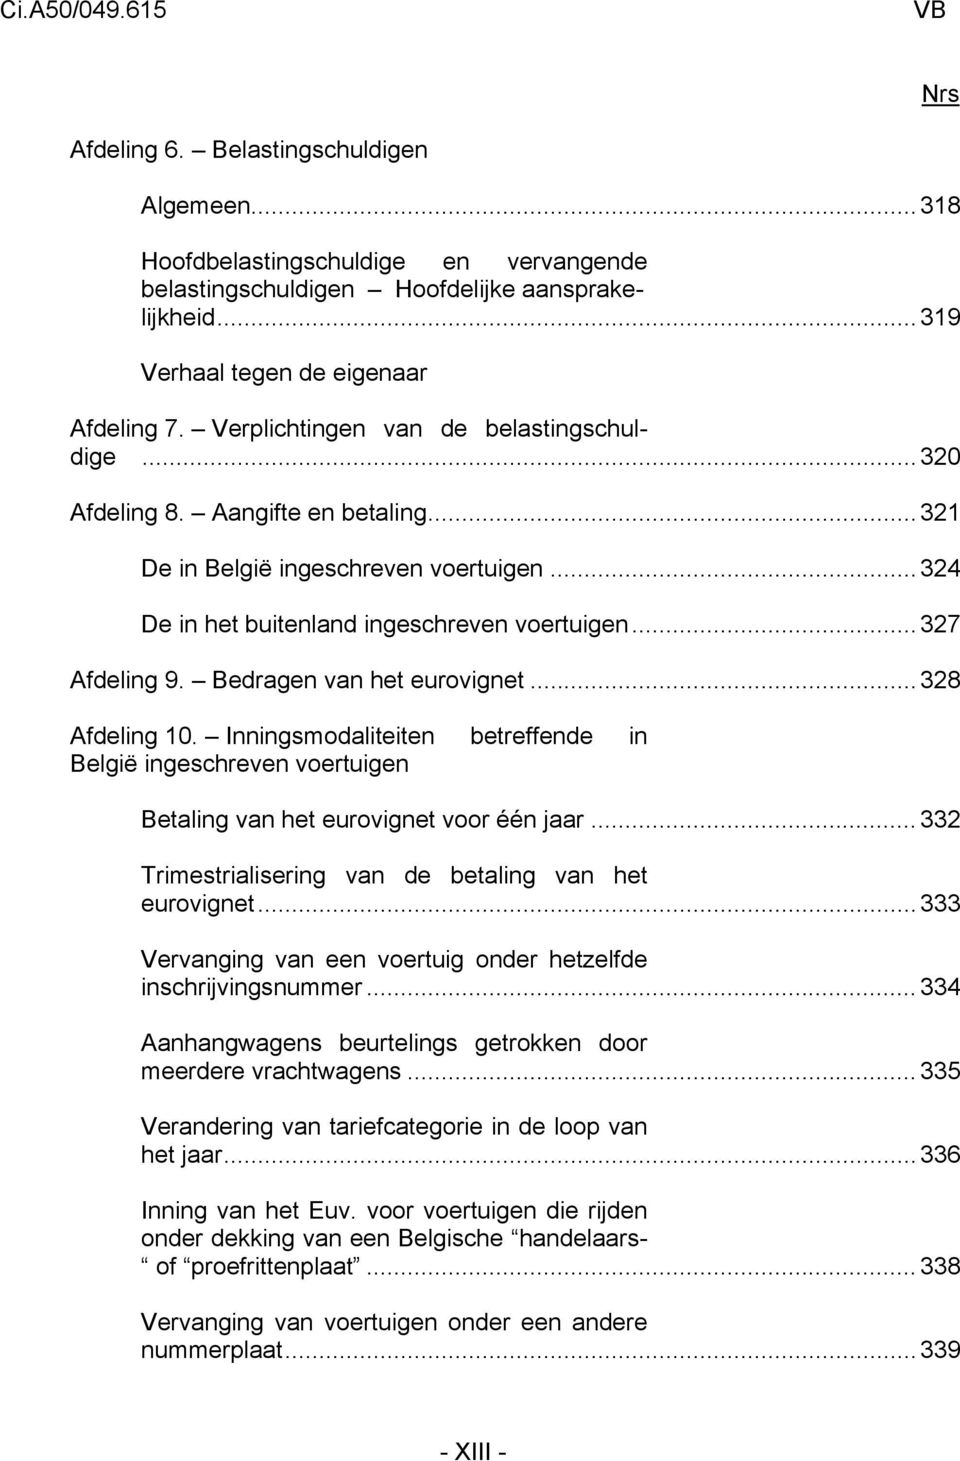 Bedragen van het eurovignet...328 Afdeling 10. Inningsmodaliteiten betreffende in België ingeschreven voertuigen Betaling van het eurovignet voor één jaar.